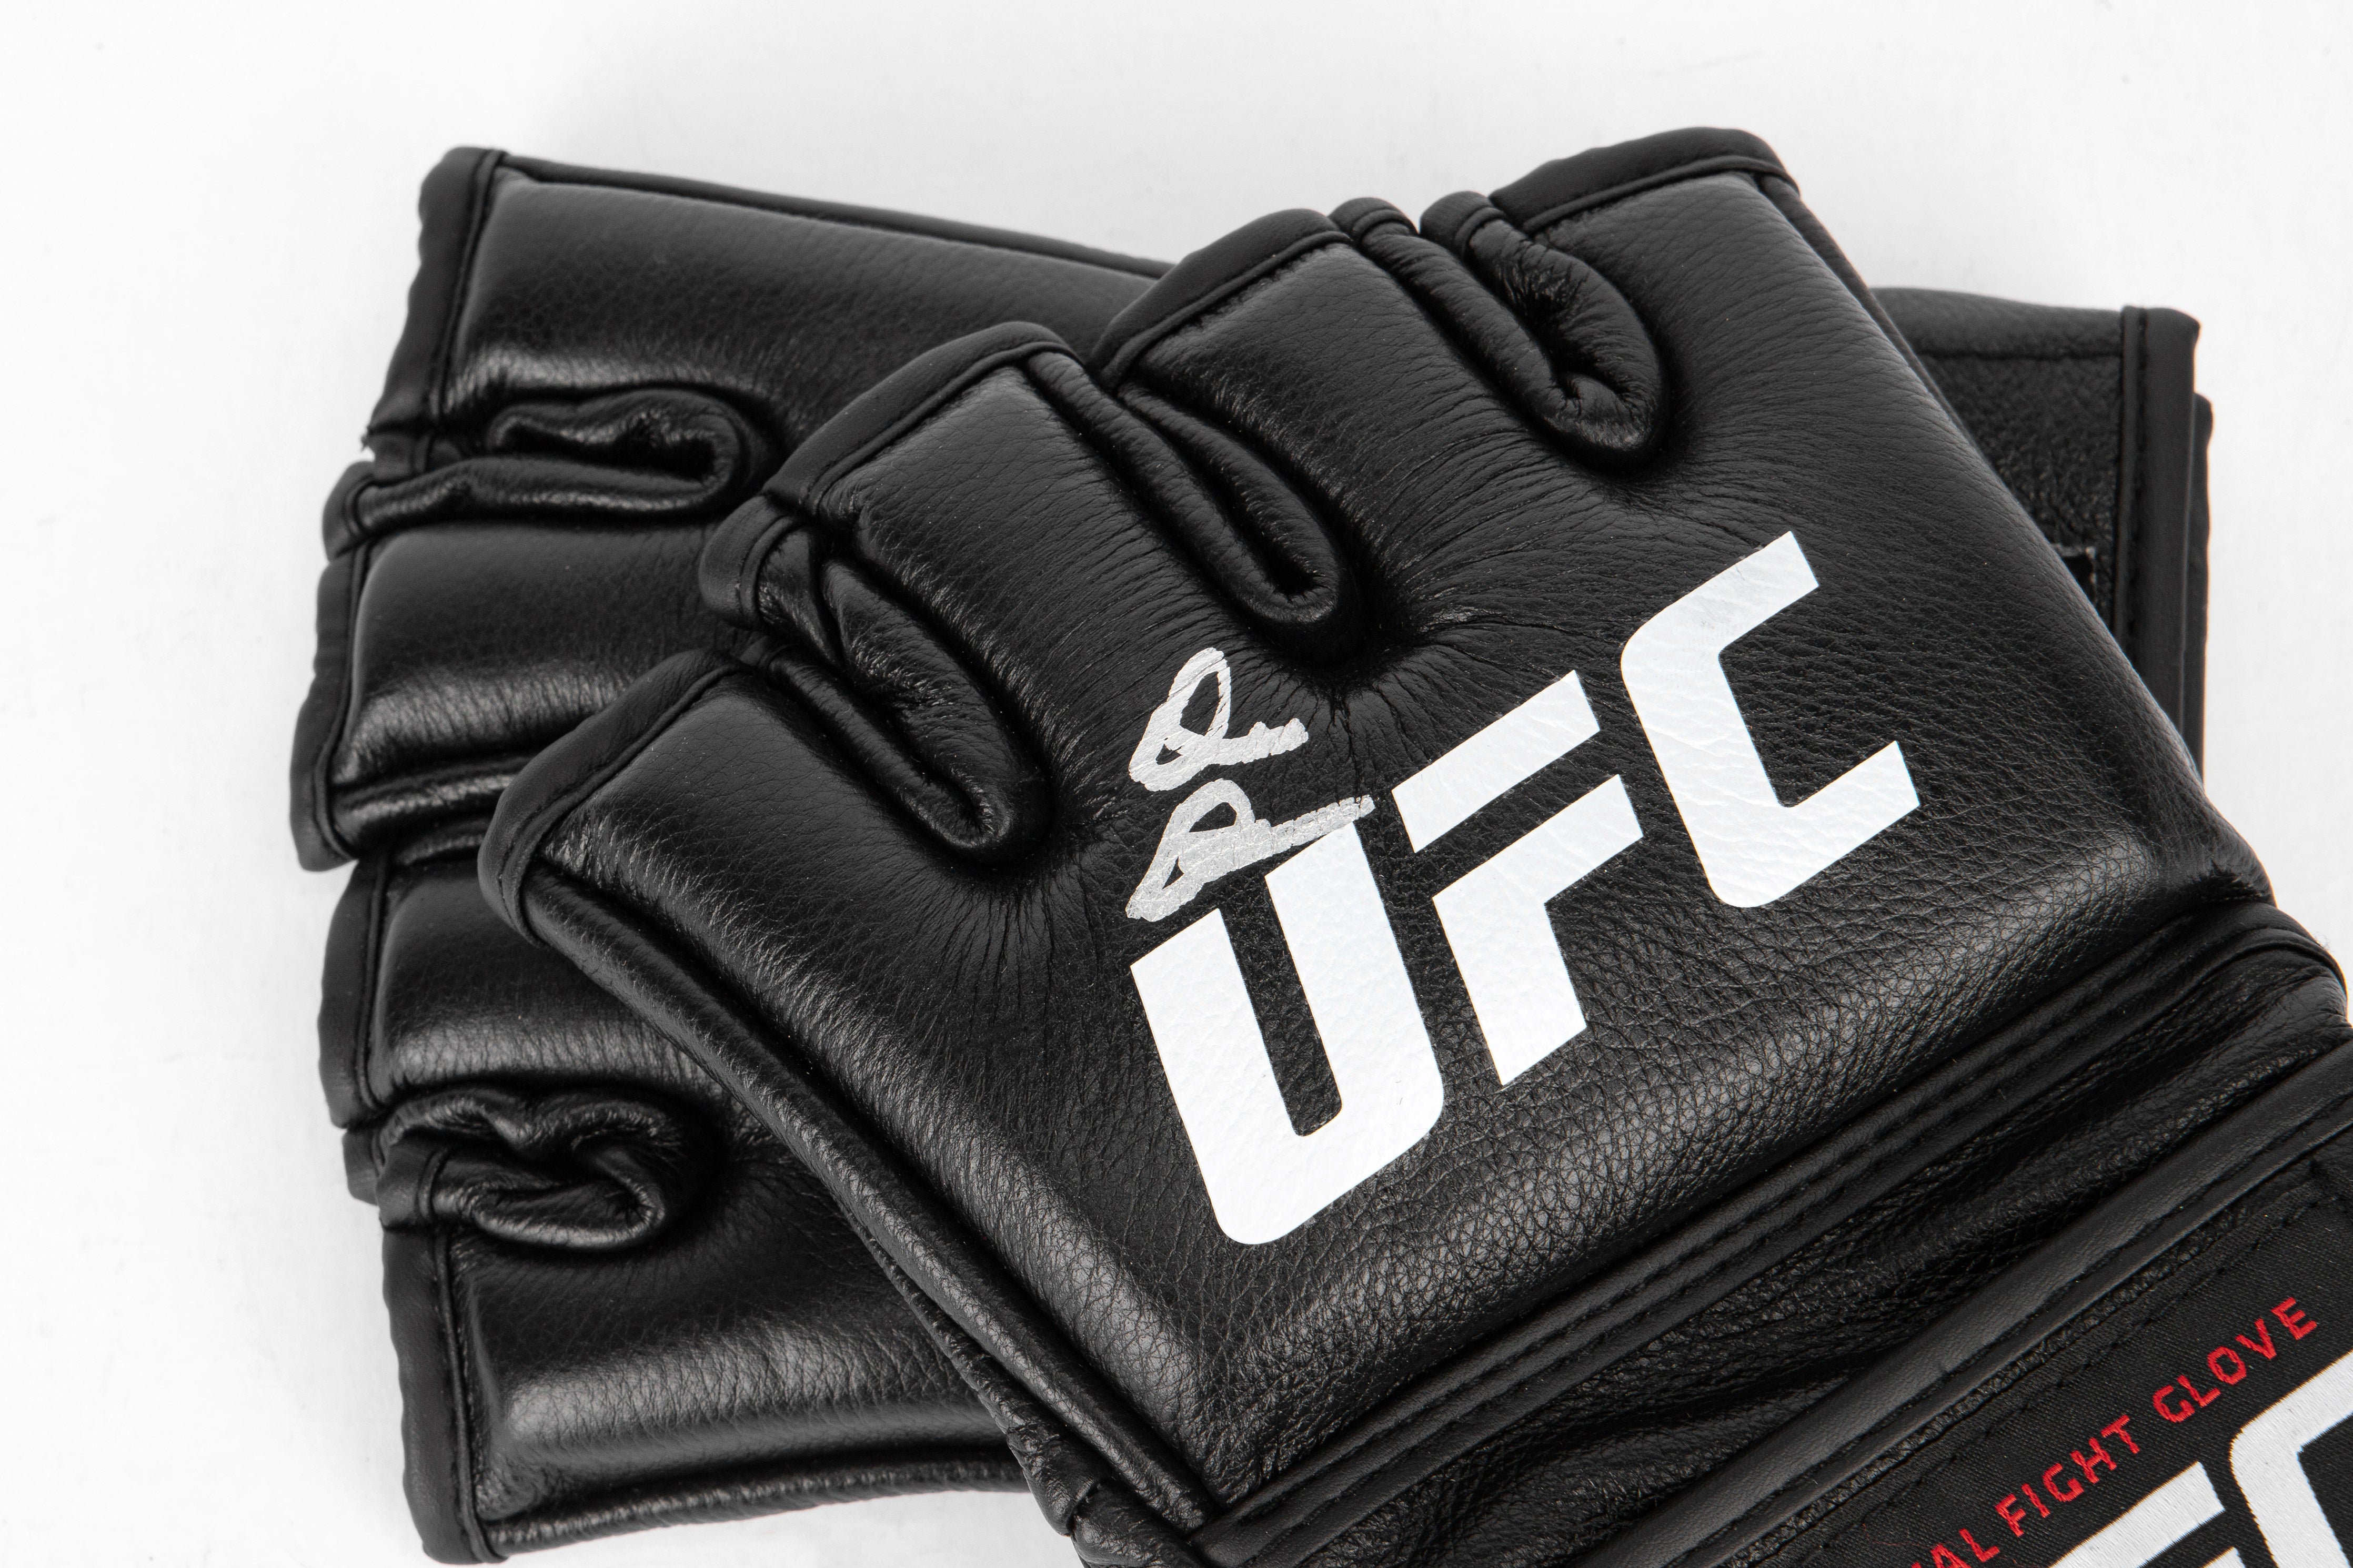 Derek Brunson Signed Official UFC Gloves